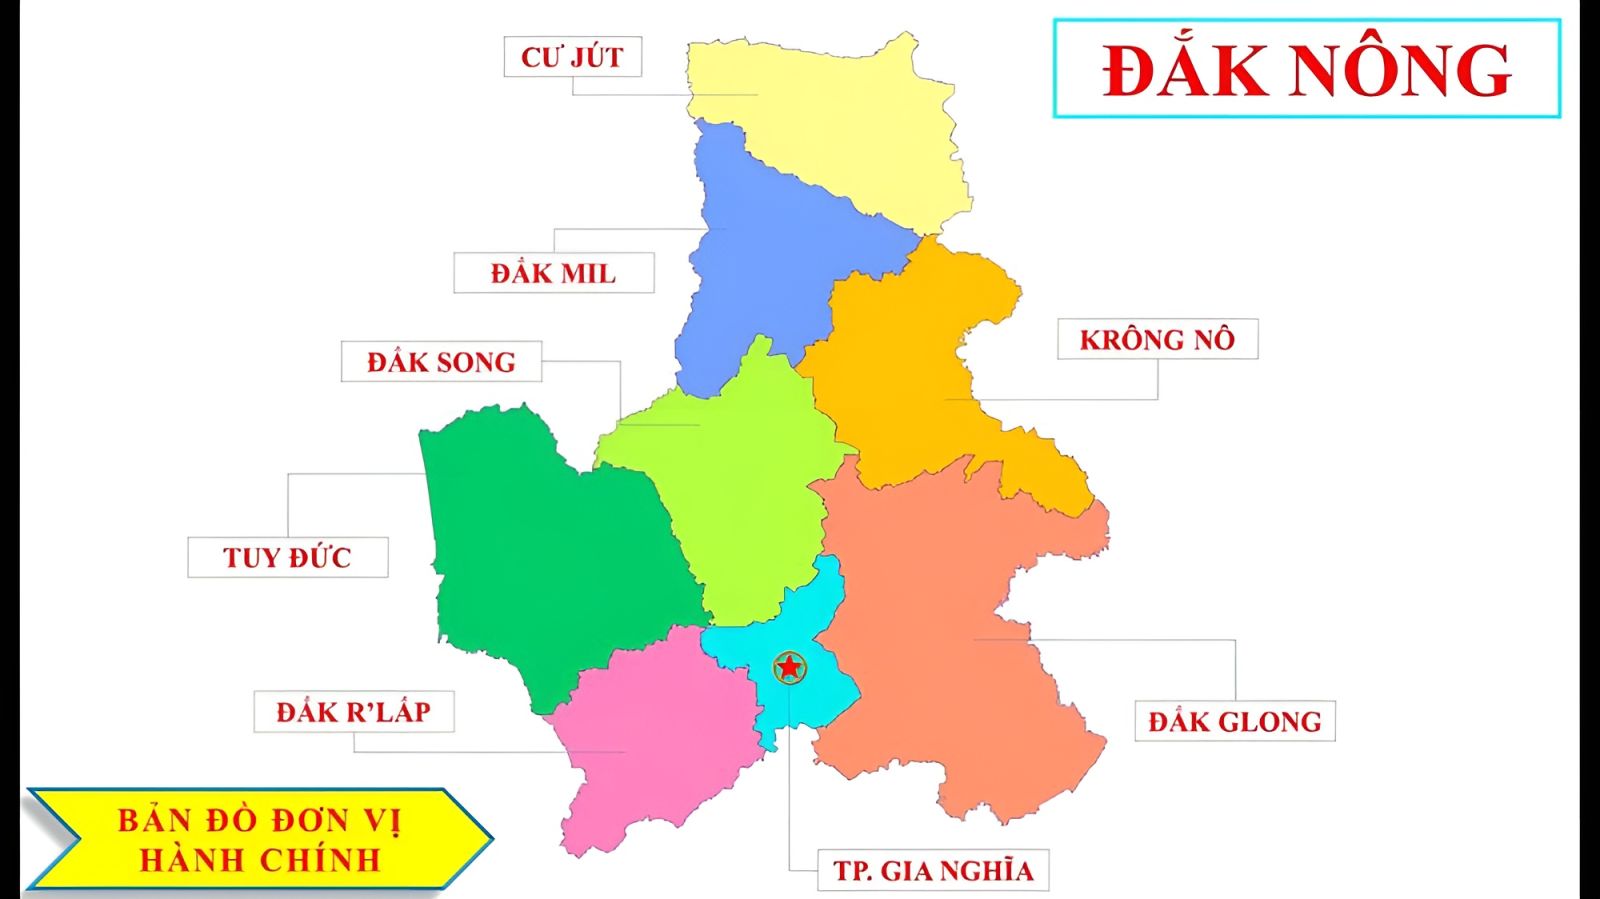 Đắk Nông là một tỉnh thuộc vùng Tây Nguyên nước ta